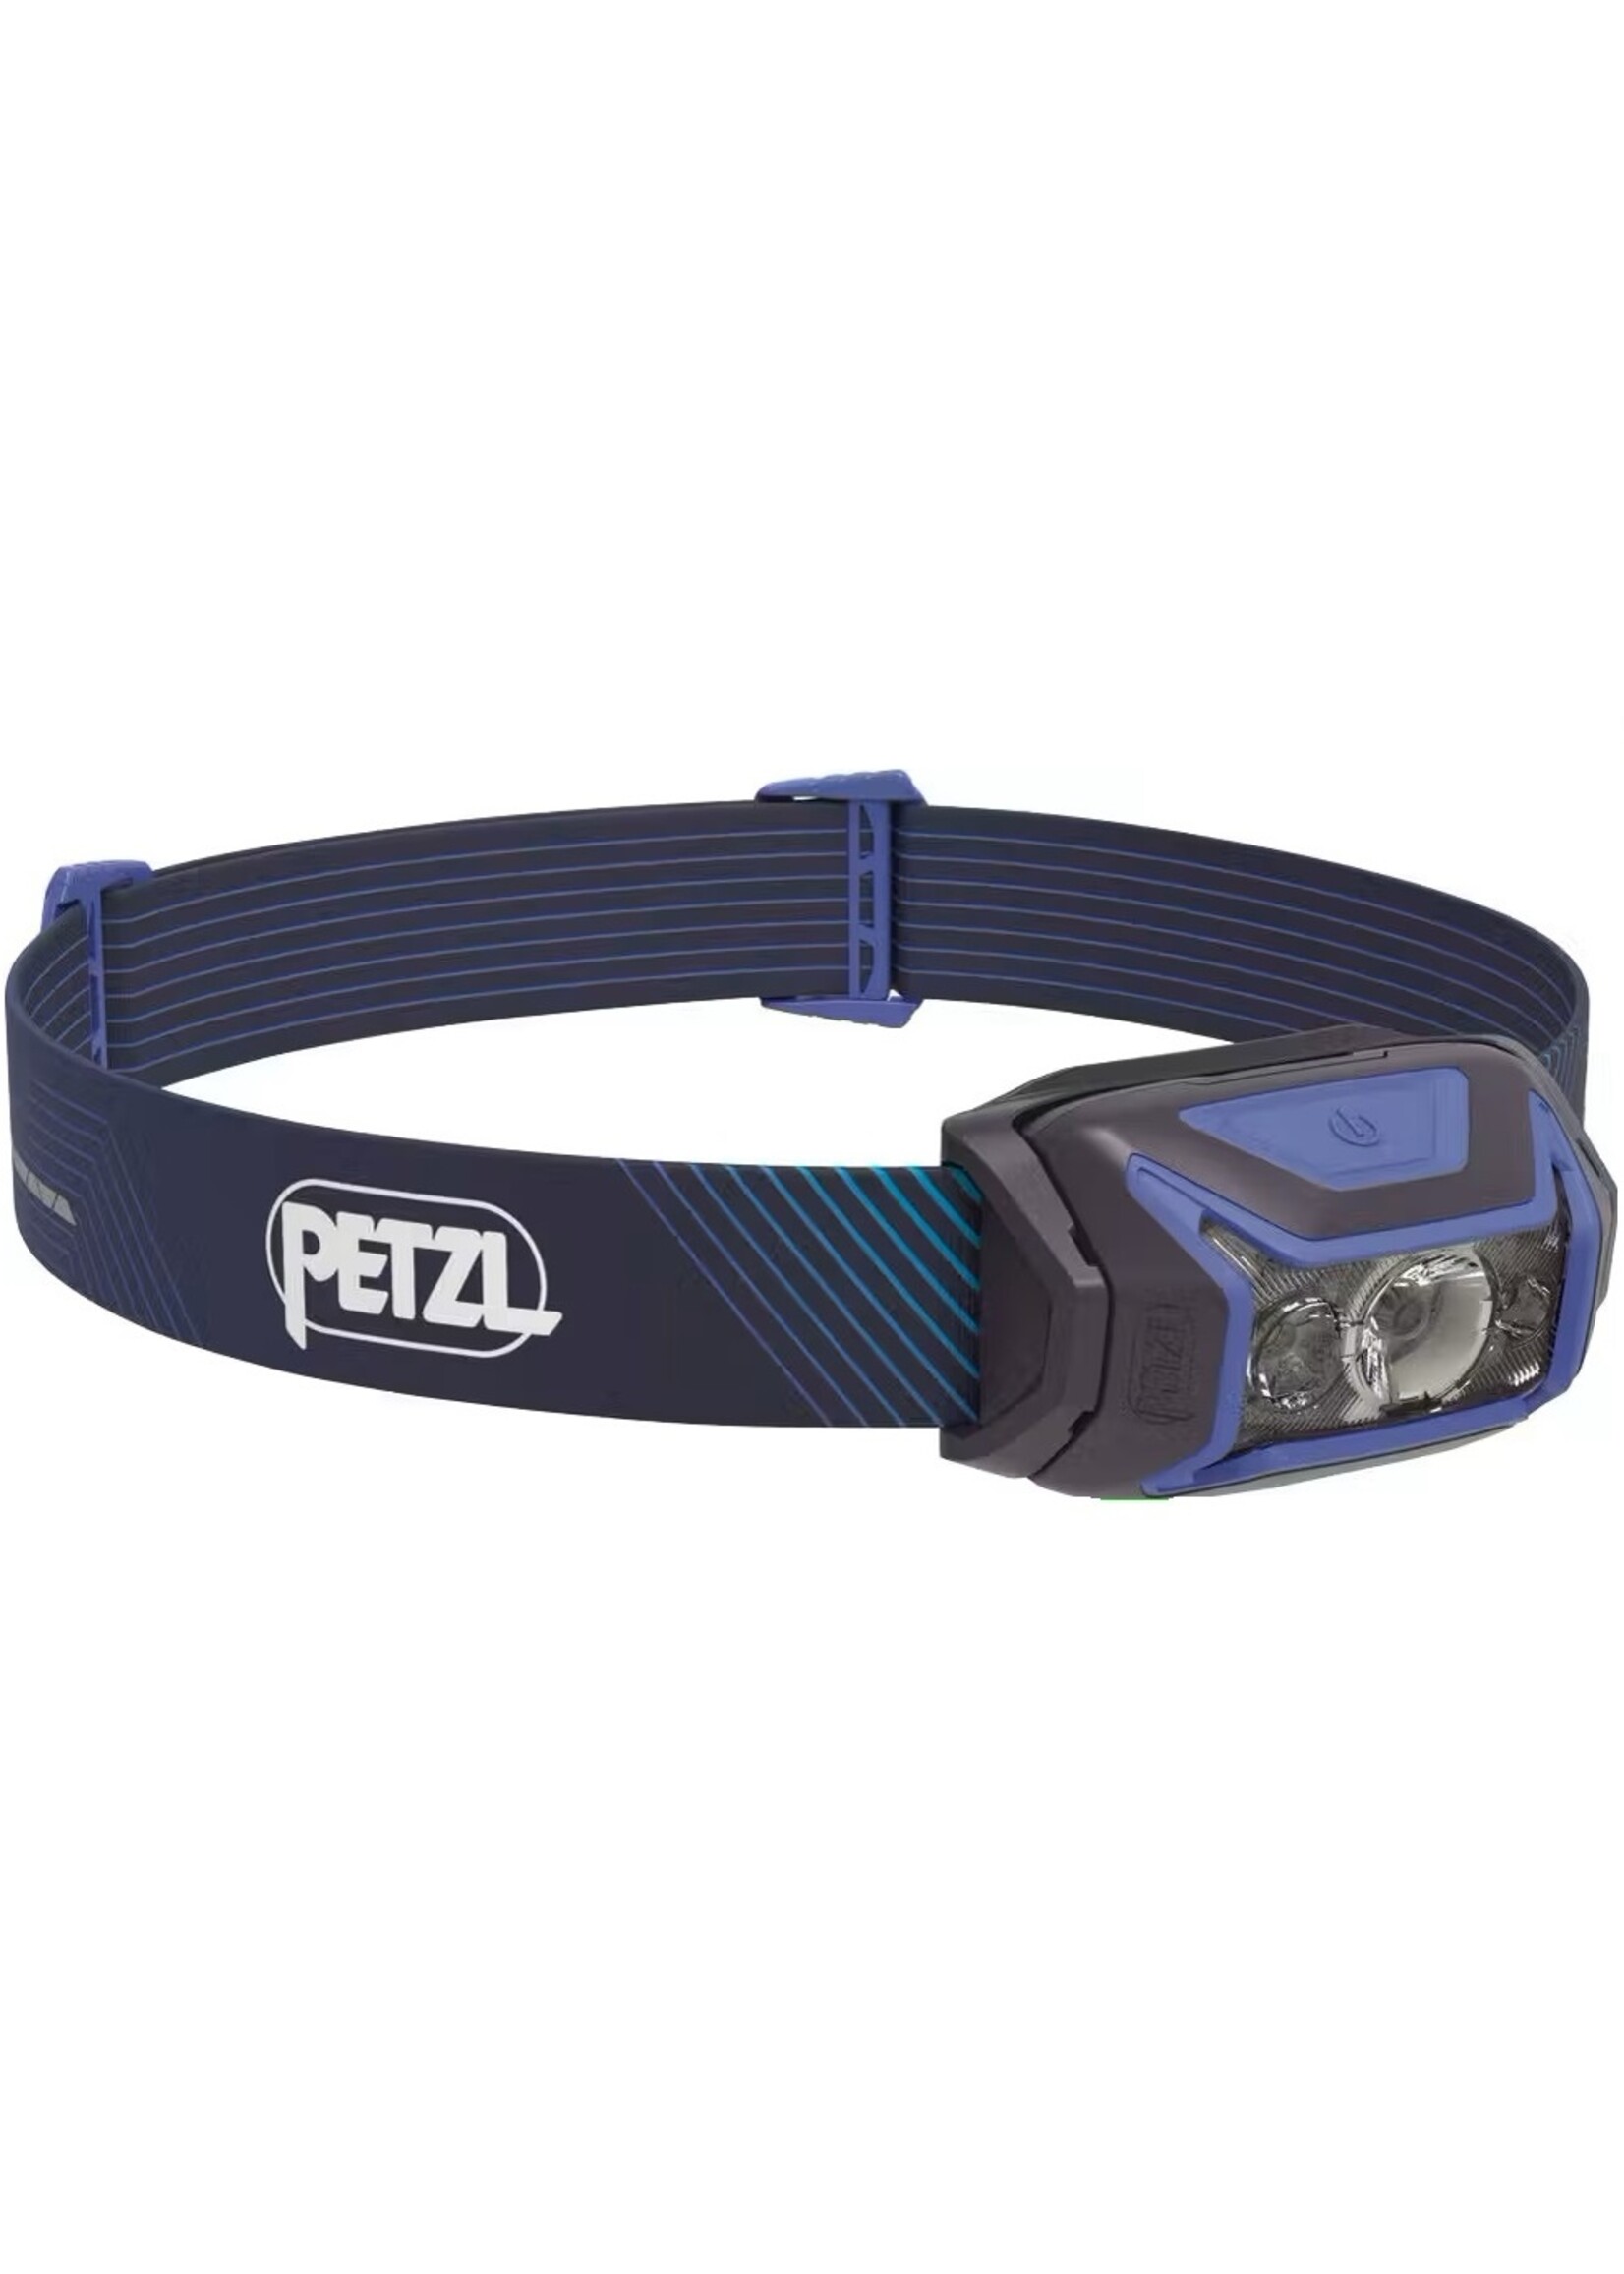 Petzl Petzl Actik Core Headlamp - 600 Lumen